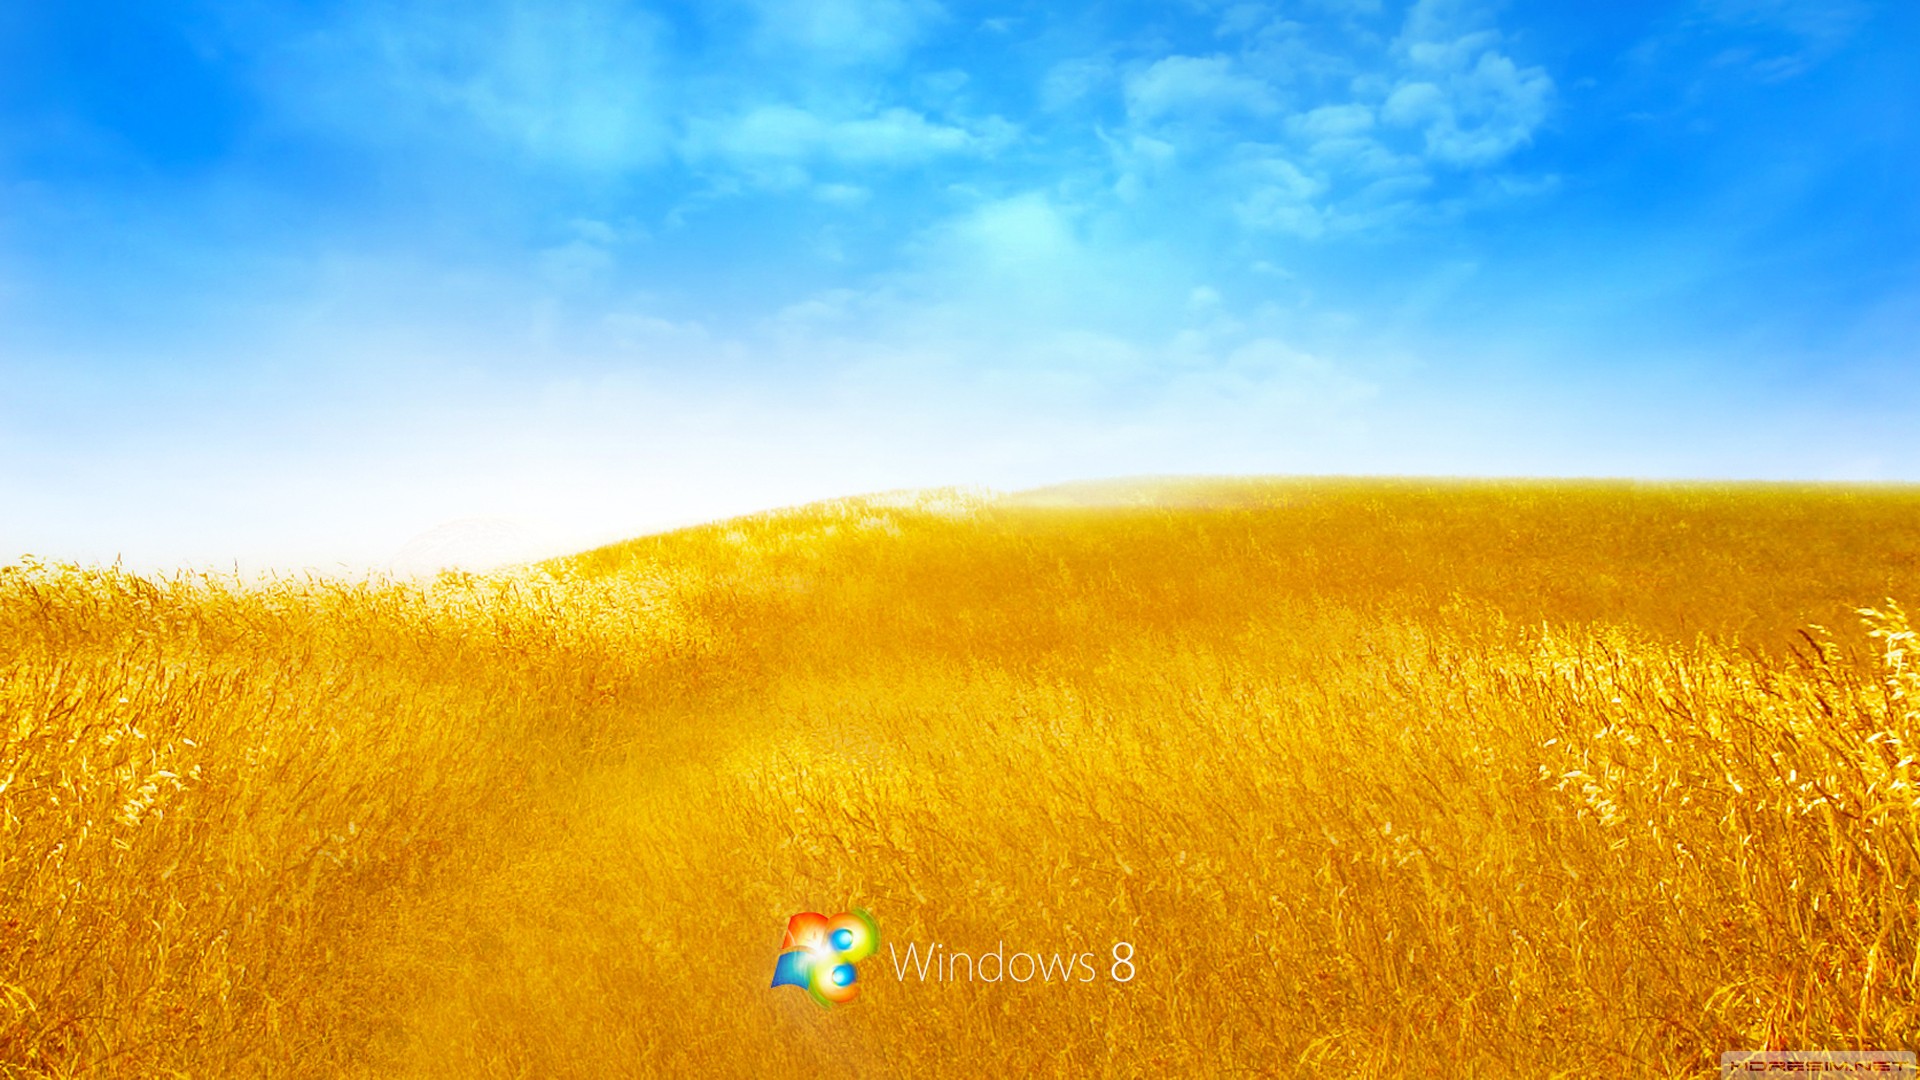 windows,işletim sistemi,windows 8